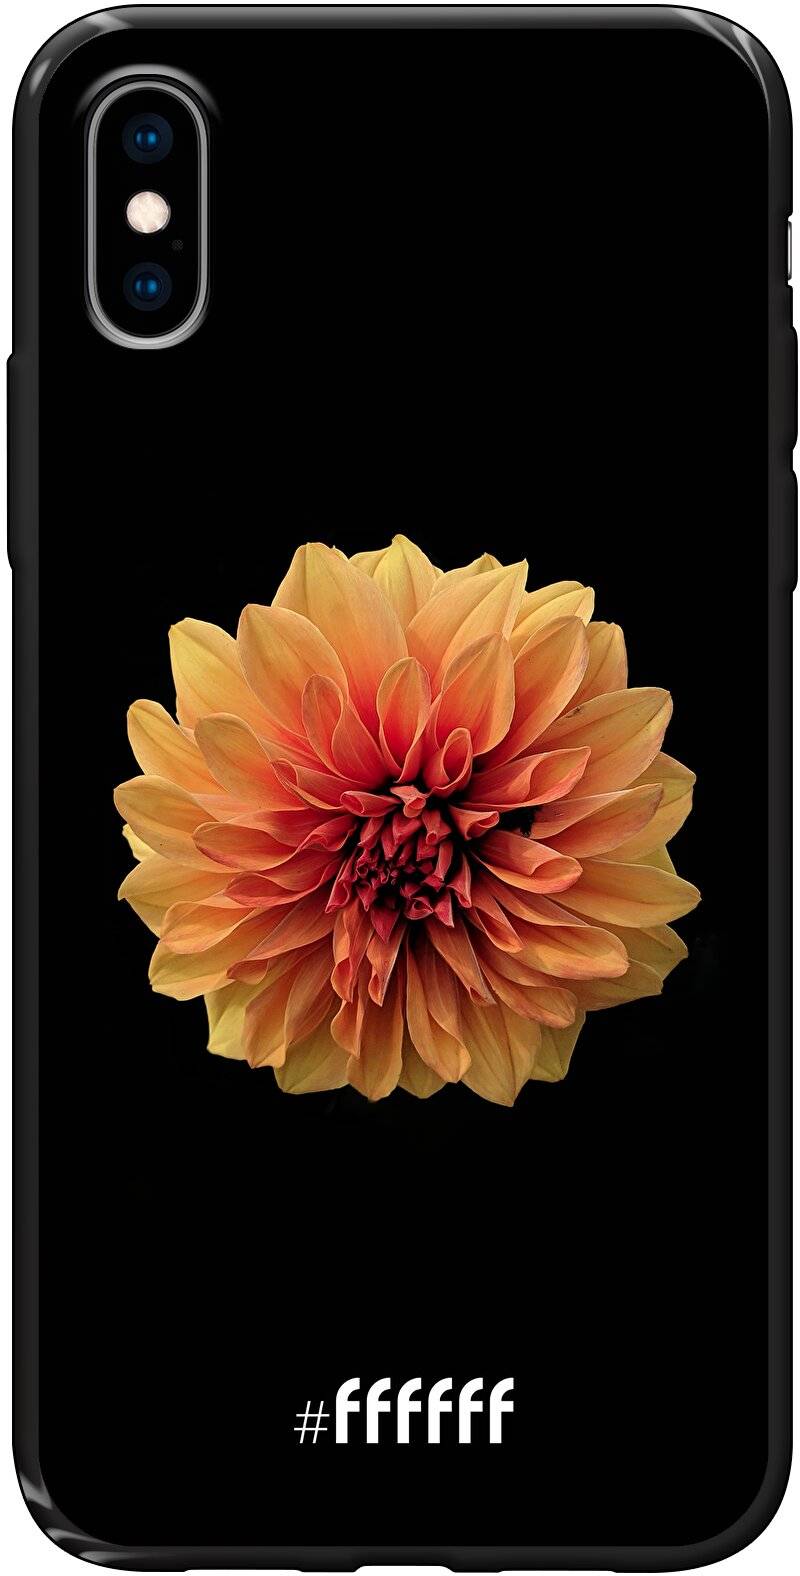 Butterscotch Blossom iPhone X